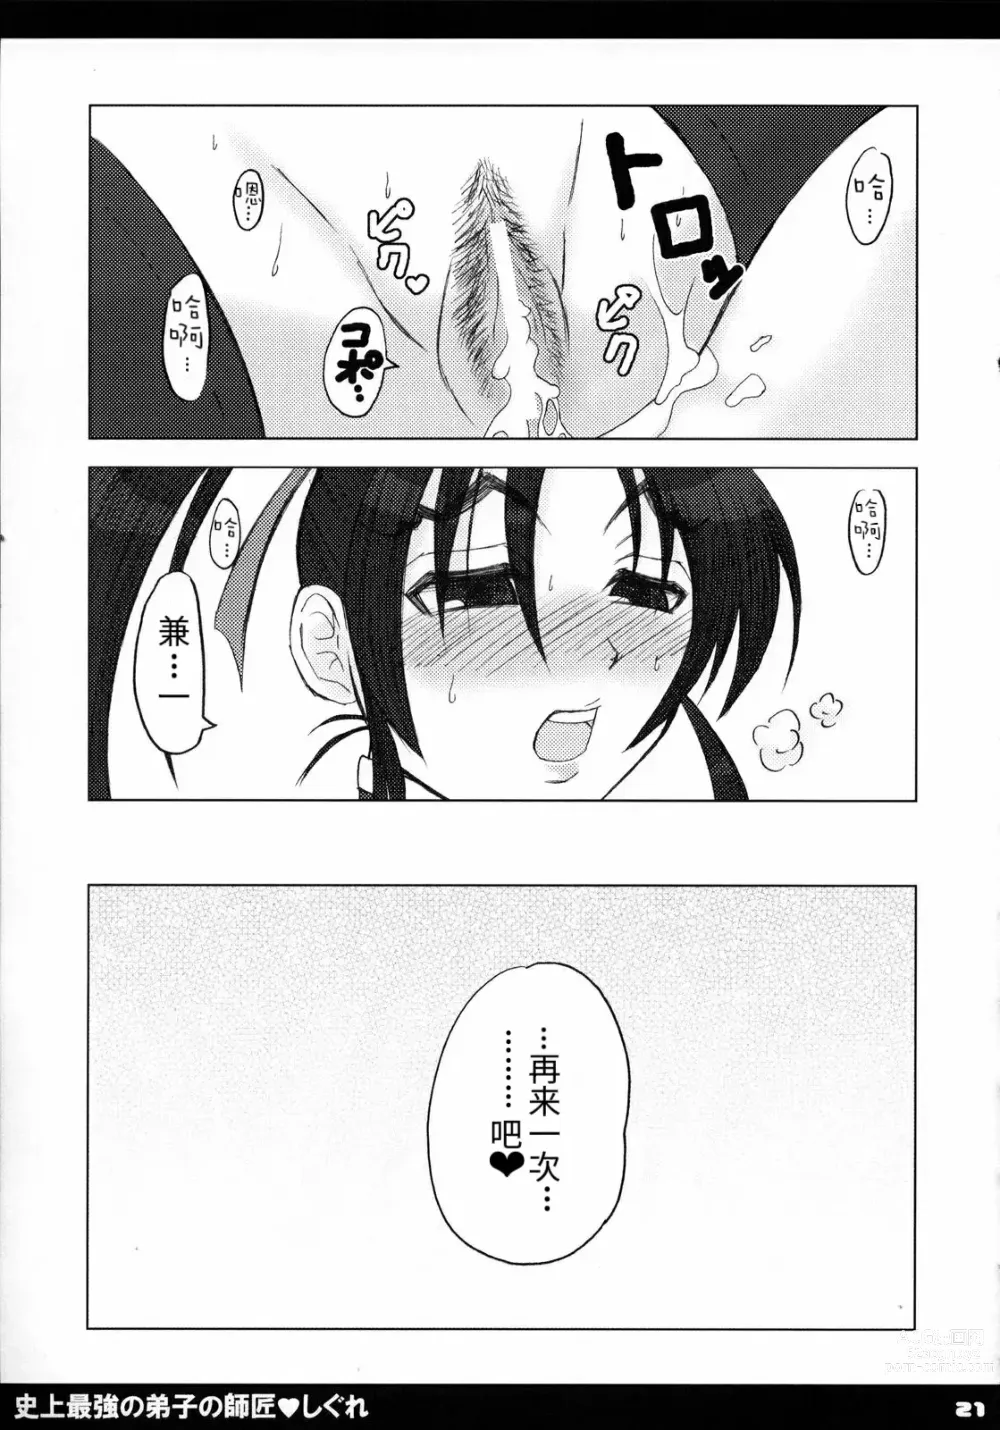 Page 22 of doujinshi Shijou Saikyou no Deshi no Shishou Shigure